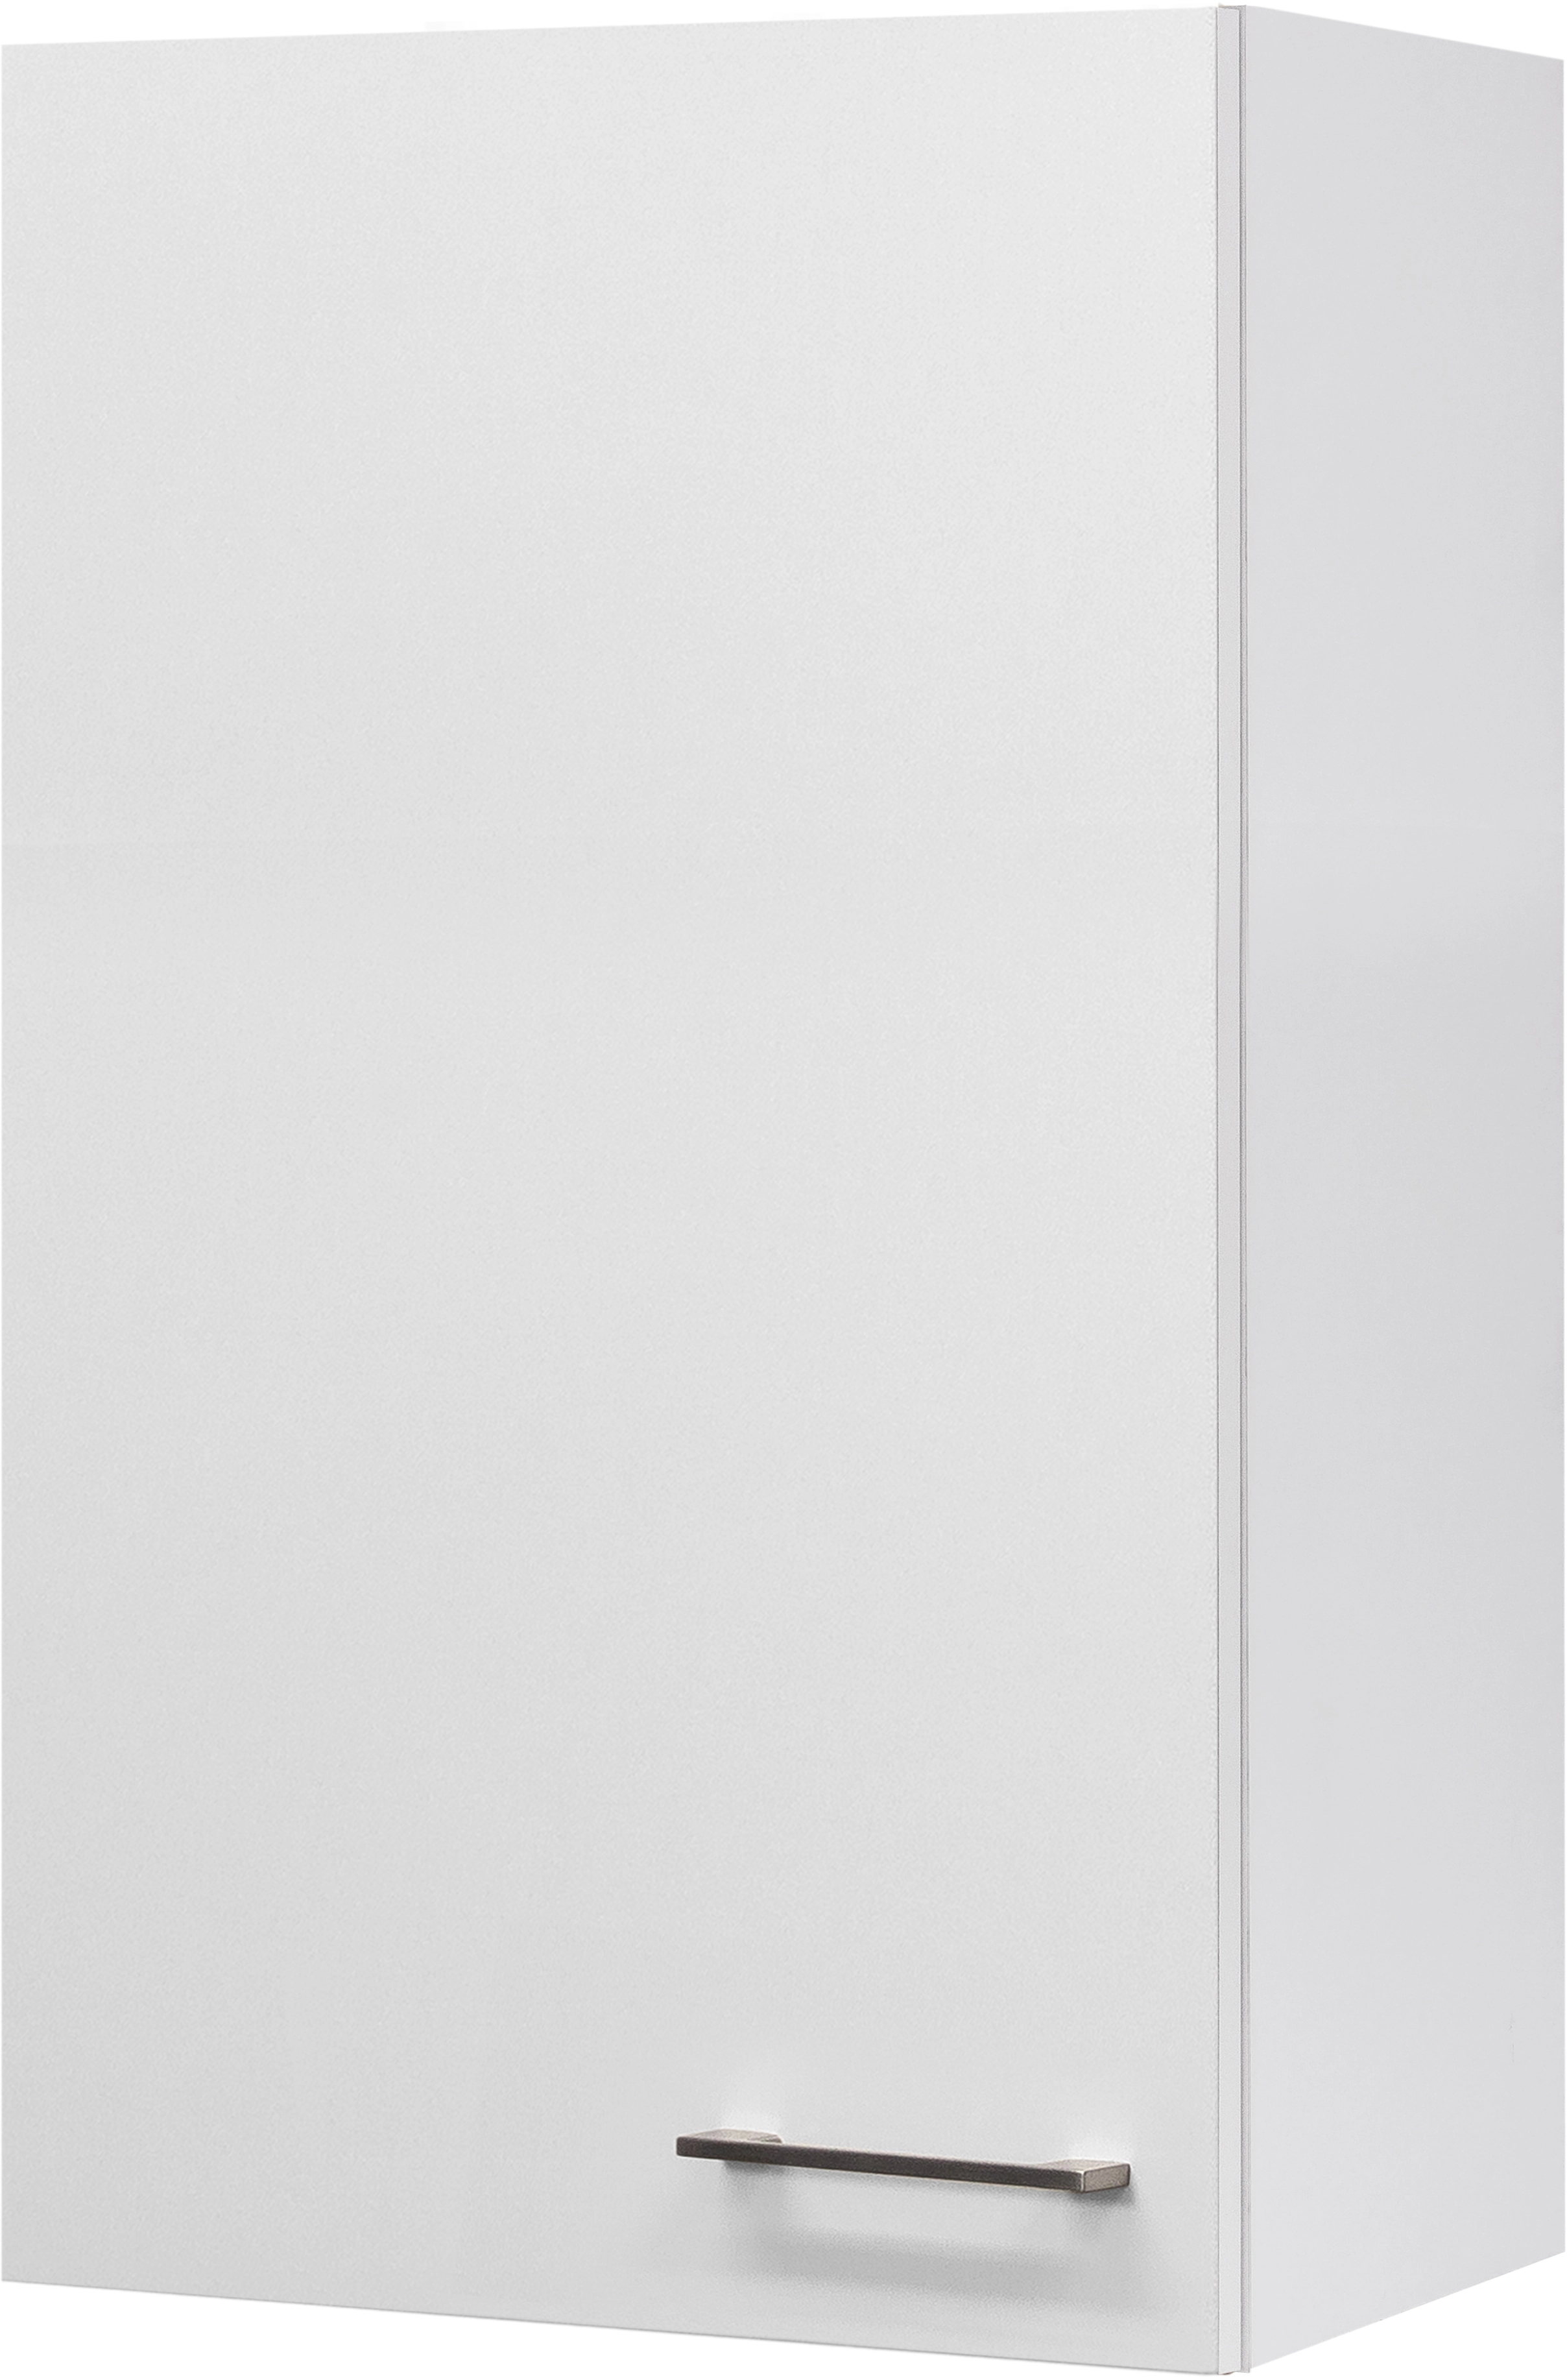 Flex-Well Exclusiv Hängeschrank groß Joelina 50 x 89 cm Weiß kaufen bei OBI